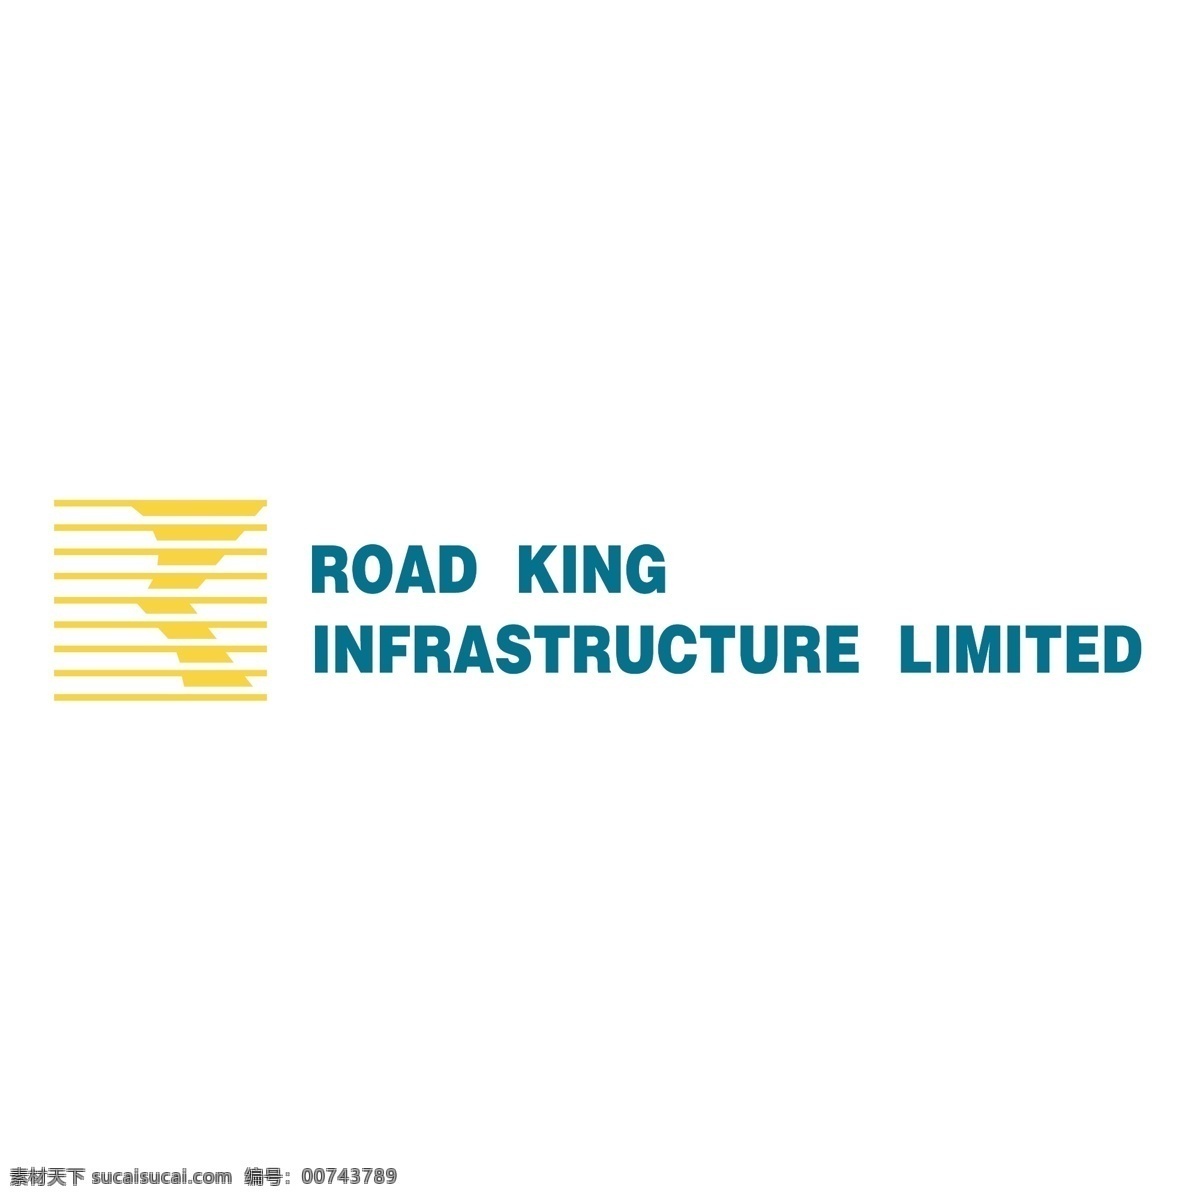 路 劲 基建 有限公司 道路的国王 国王 基础设施 有限 有限的 向量路王 公路 向量 道路 矢量 道路基础设施 向量的国王 白色